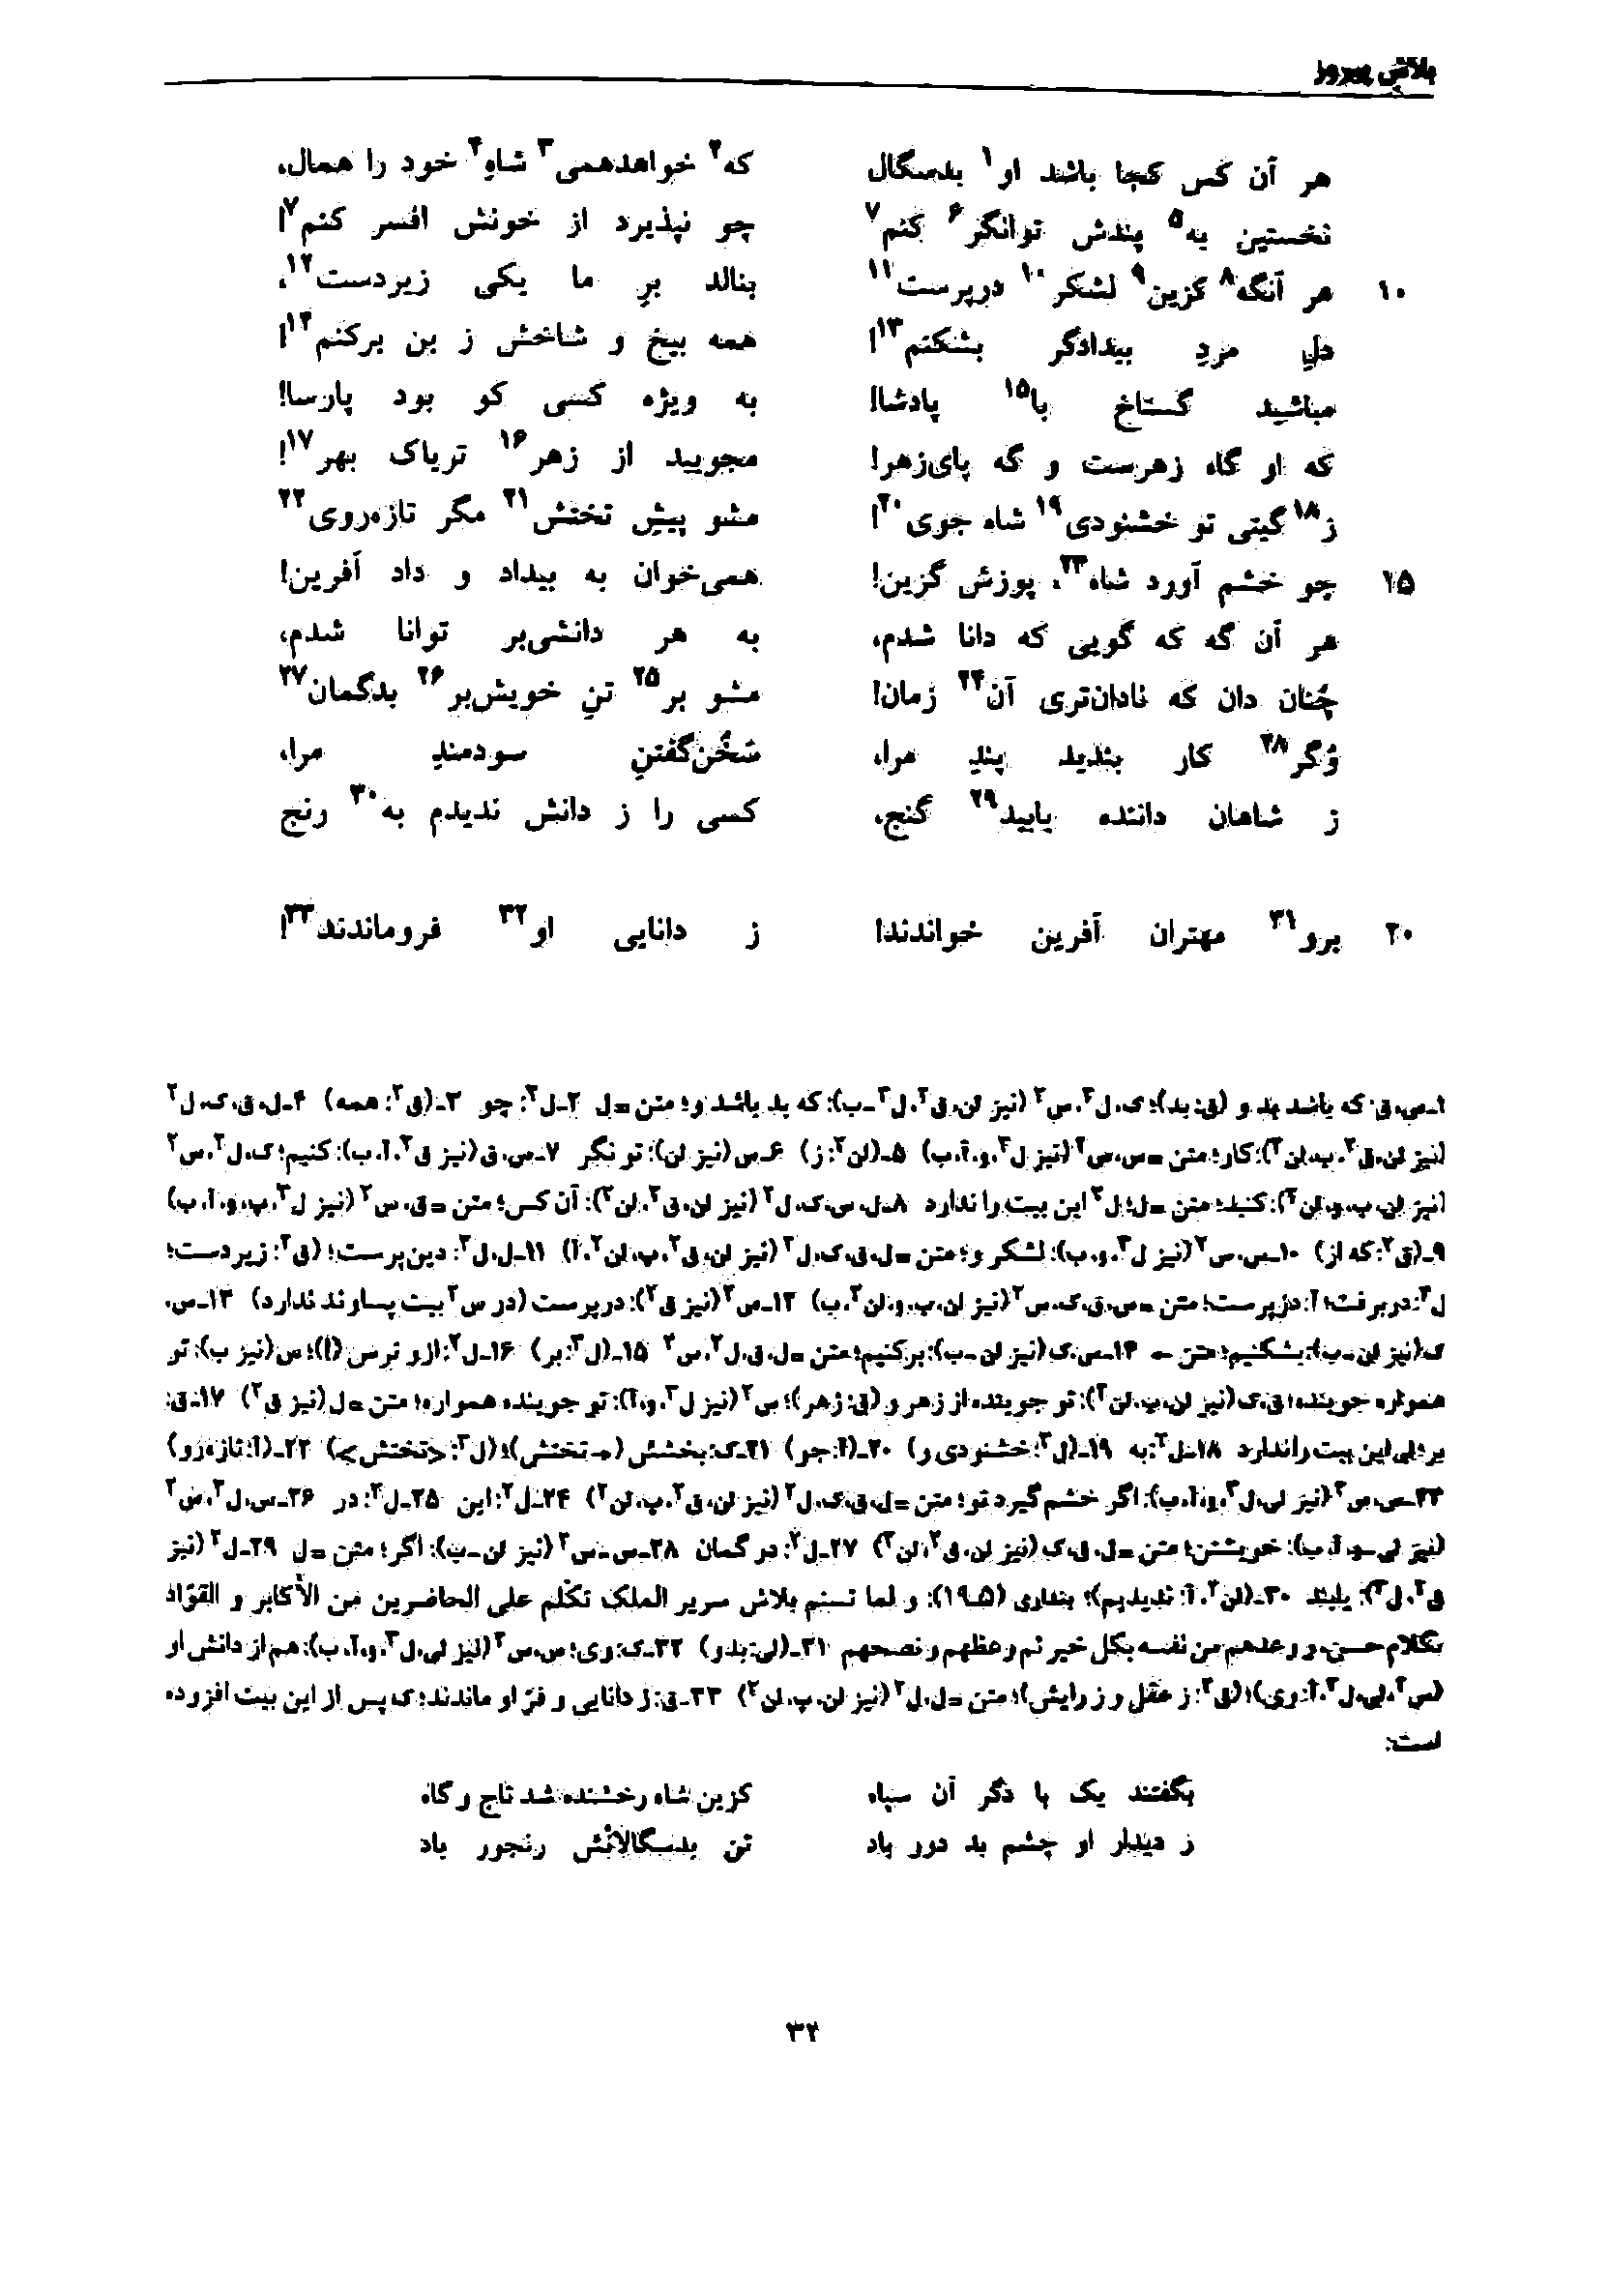 vol. 7, p. 32